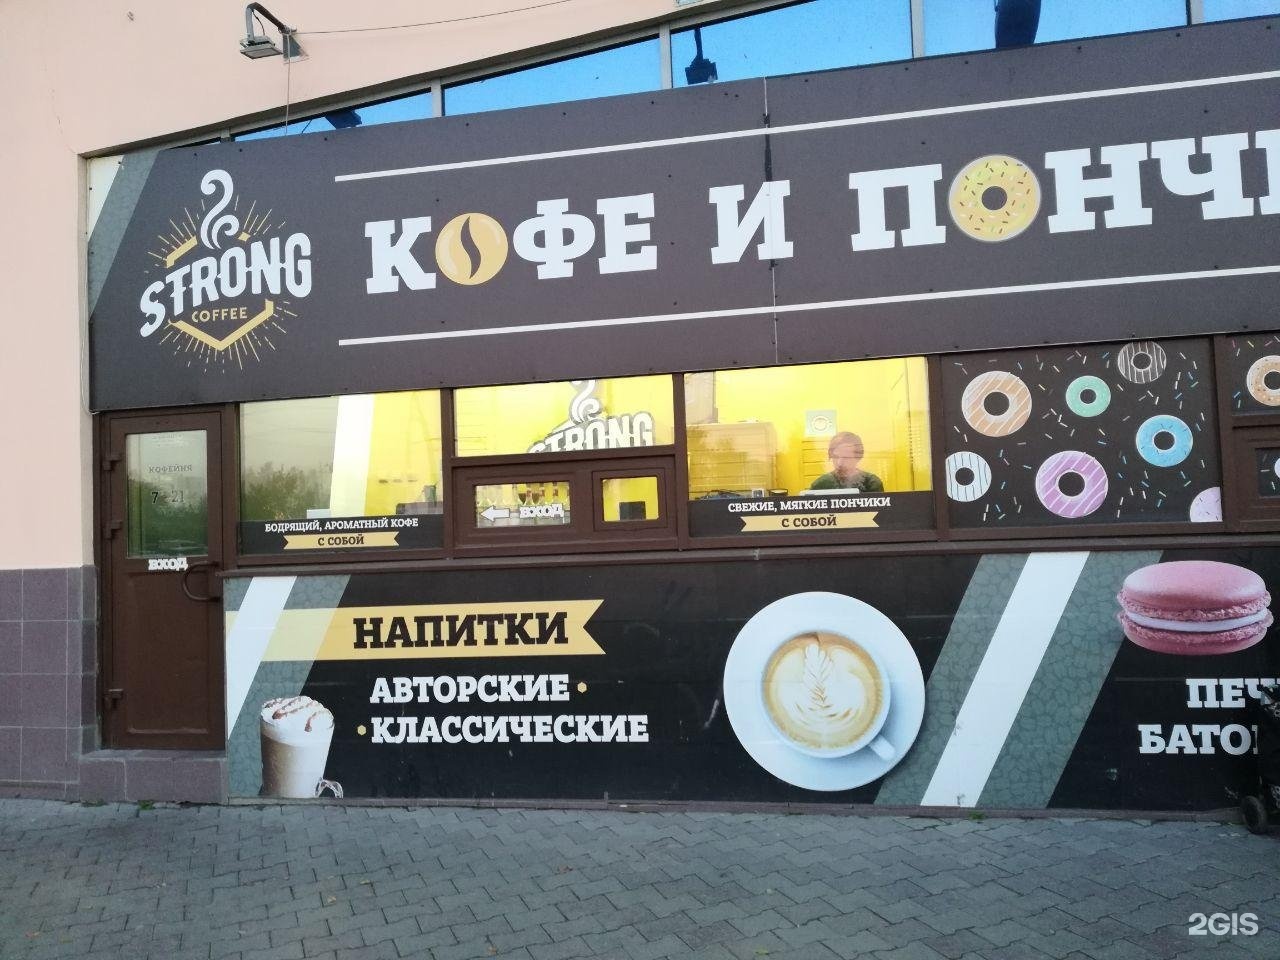 Кофейня strong. Кофе strong. Кофейня strong cofee. Мыс кофе Новороссийск. Кофе Новороссийск.